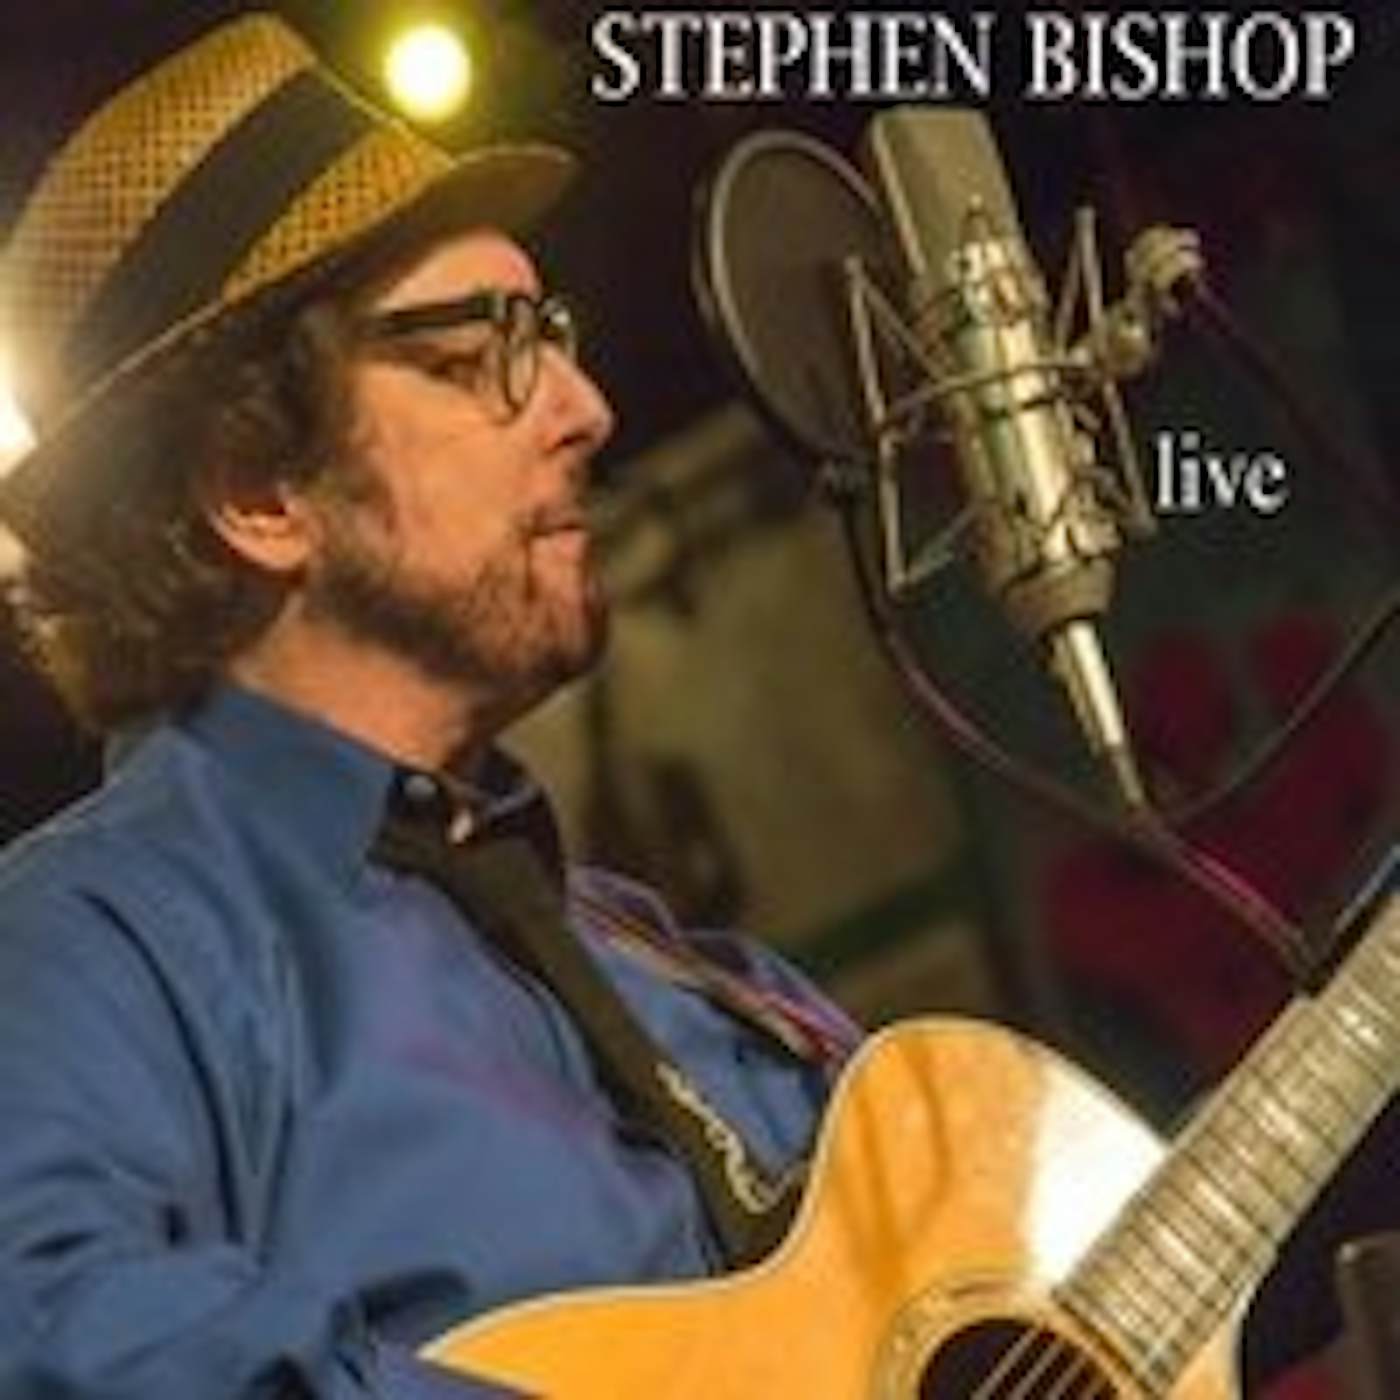 STEPHEN BISHOP LIVE CD